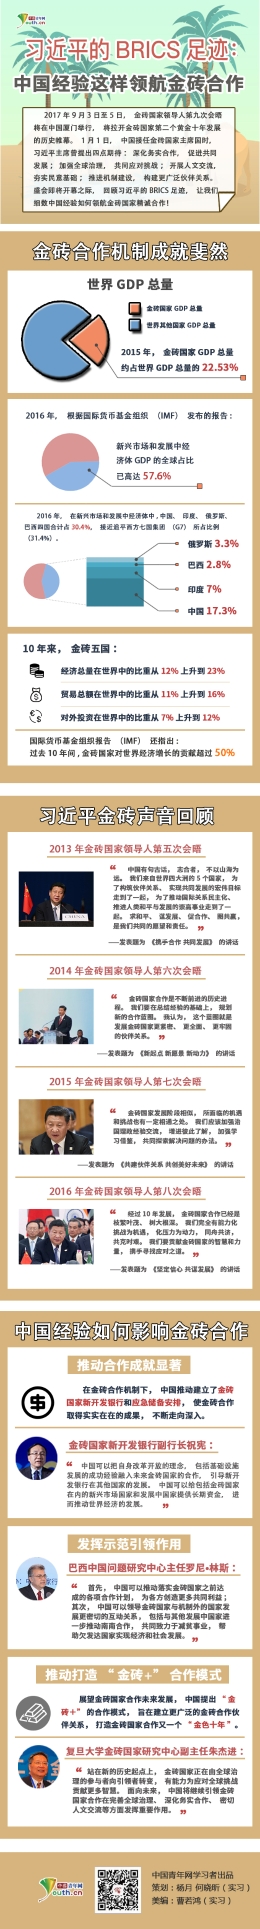 习近平的BRICS足迹 中国经验领航金砖合作